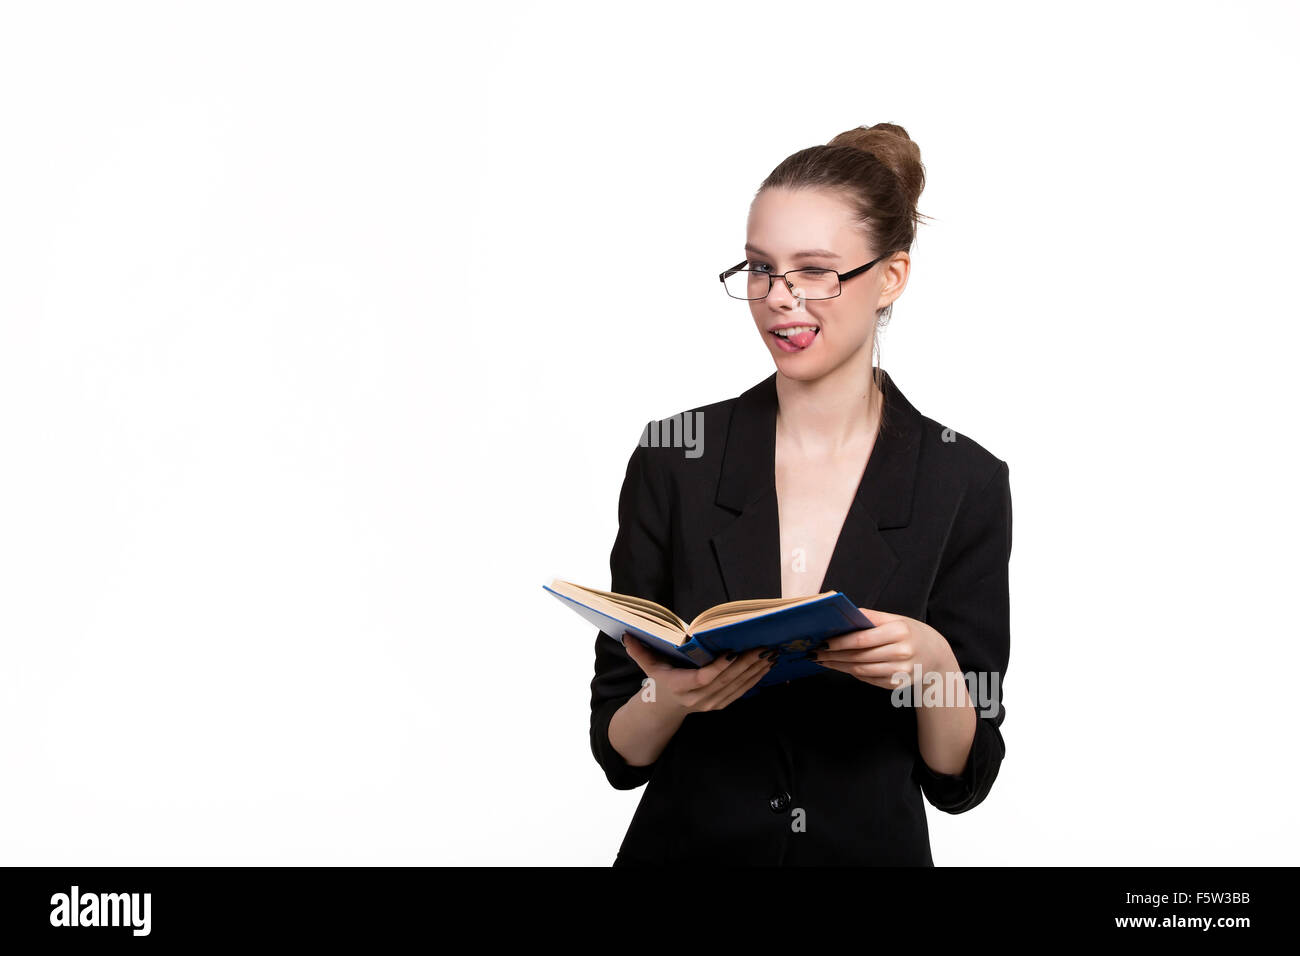 Schöne Studentin ein Buch hält und lächelnd auf einem weißen Hintergrund Stockfoto